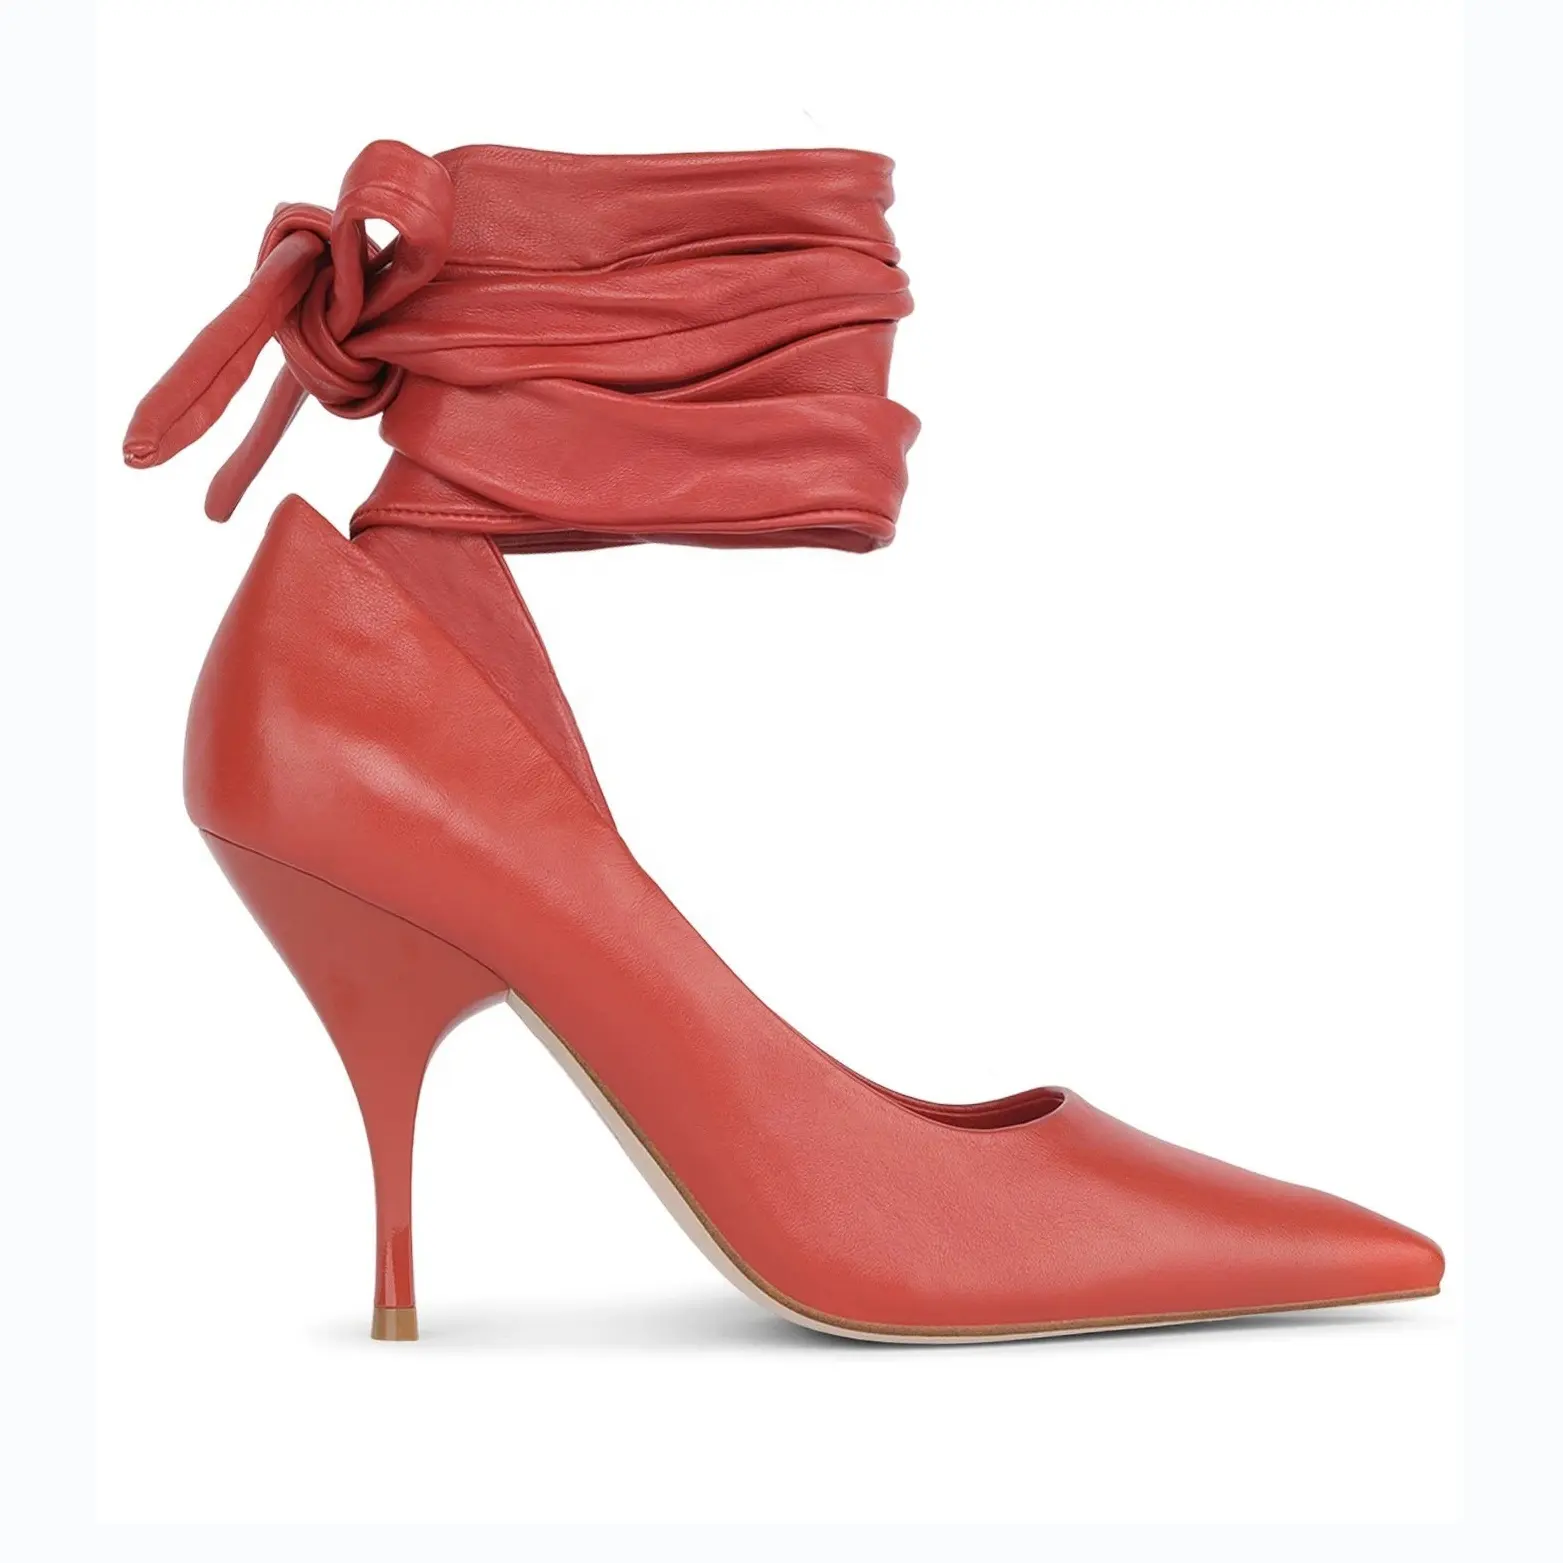 Zapatos de diseñador con correa en el tobillo para mujer, zapatillas de tacón medio con punta en pico, de piel sintética naranja, novedad de 2021